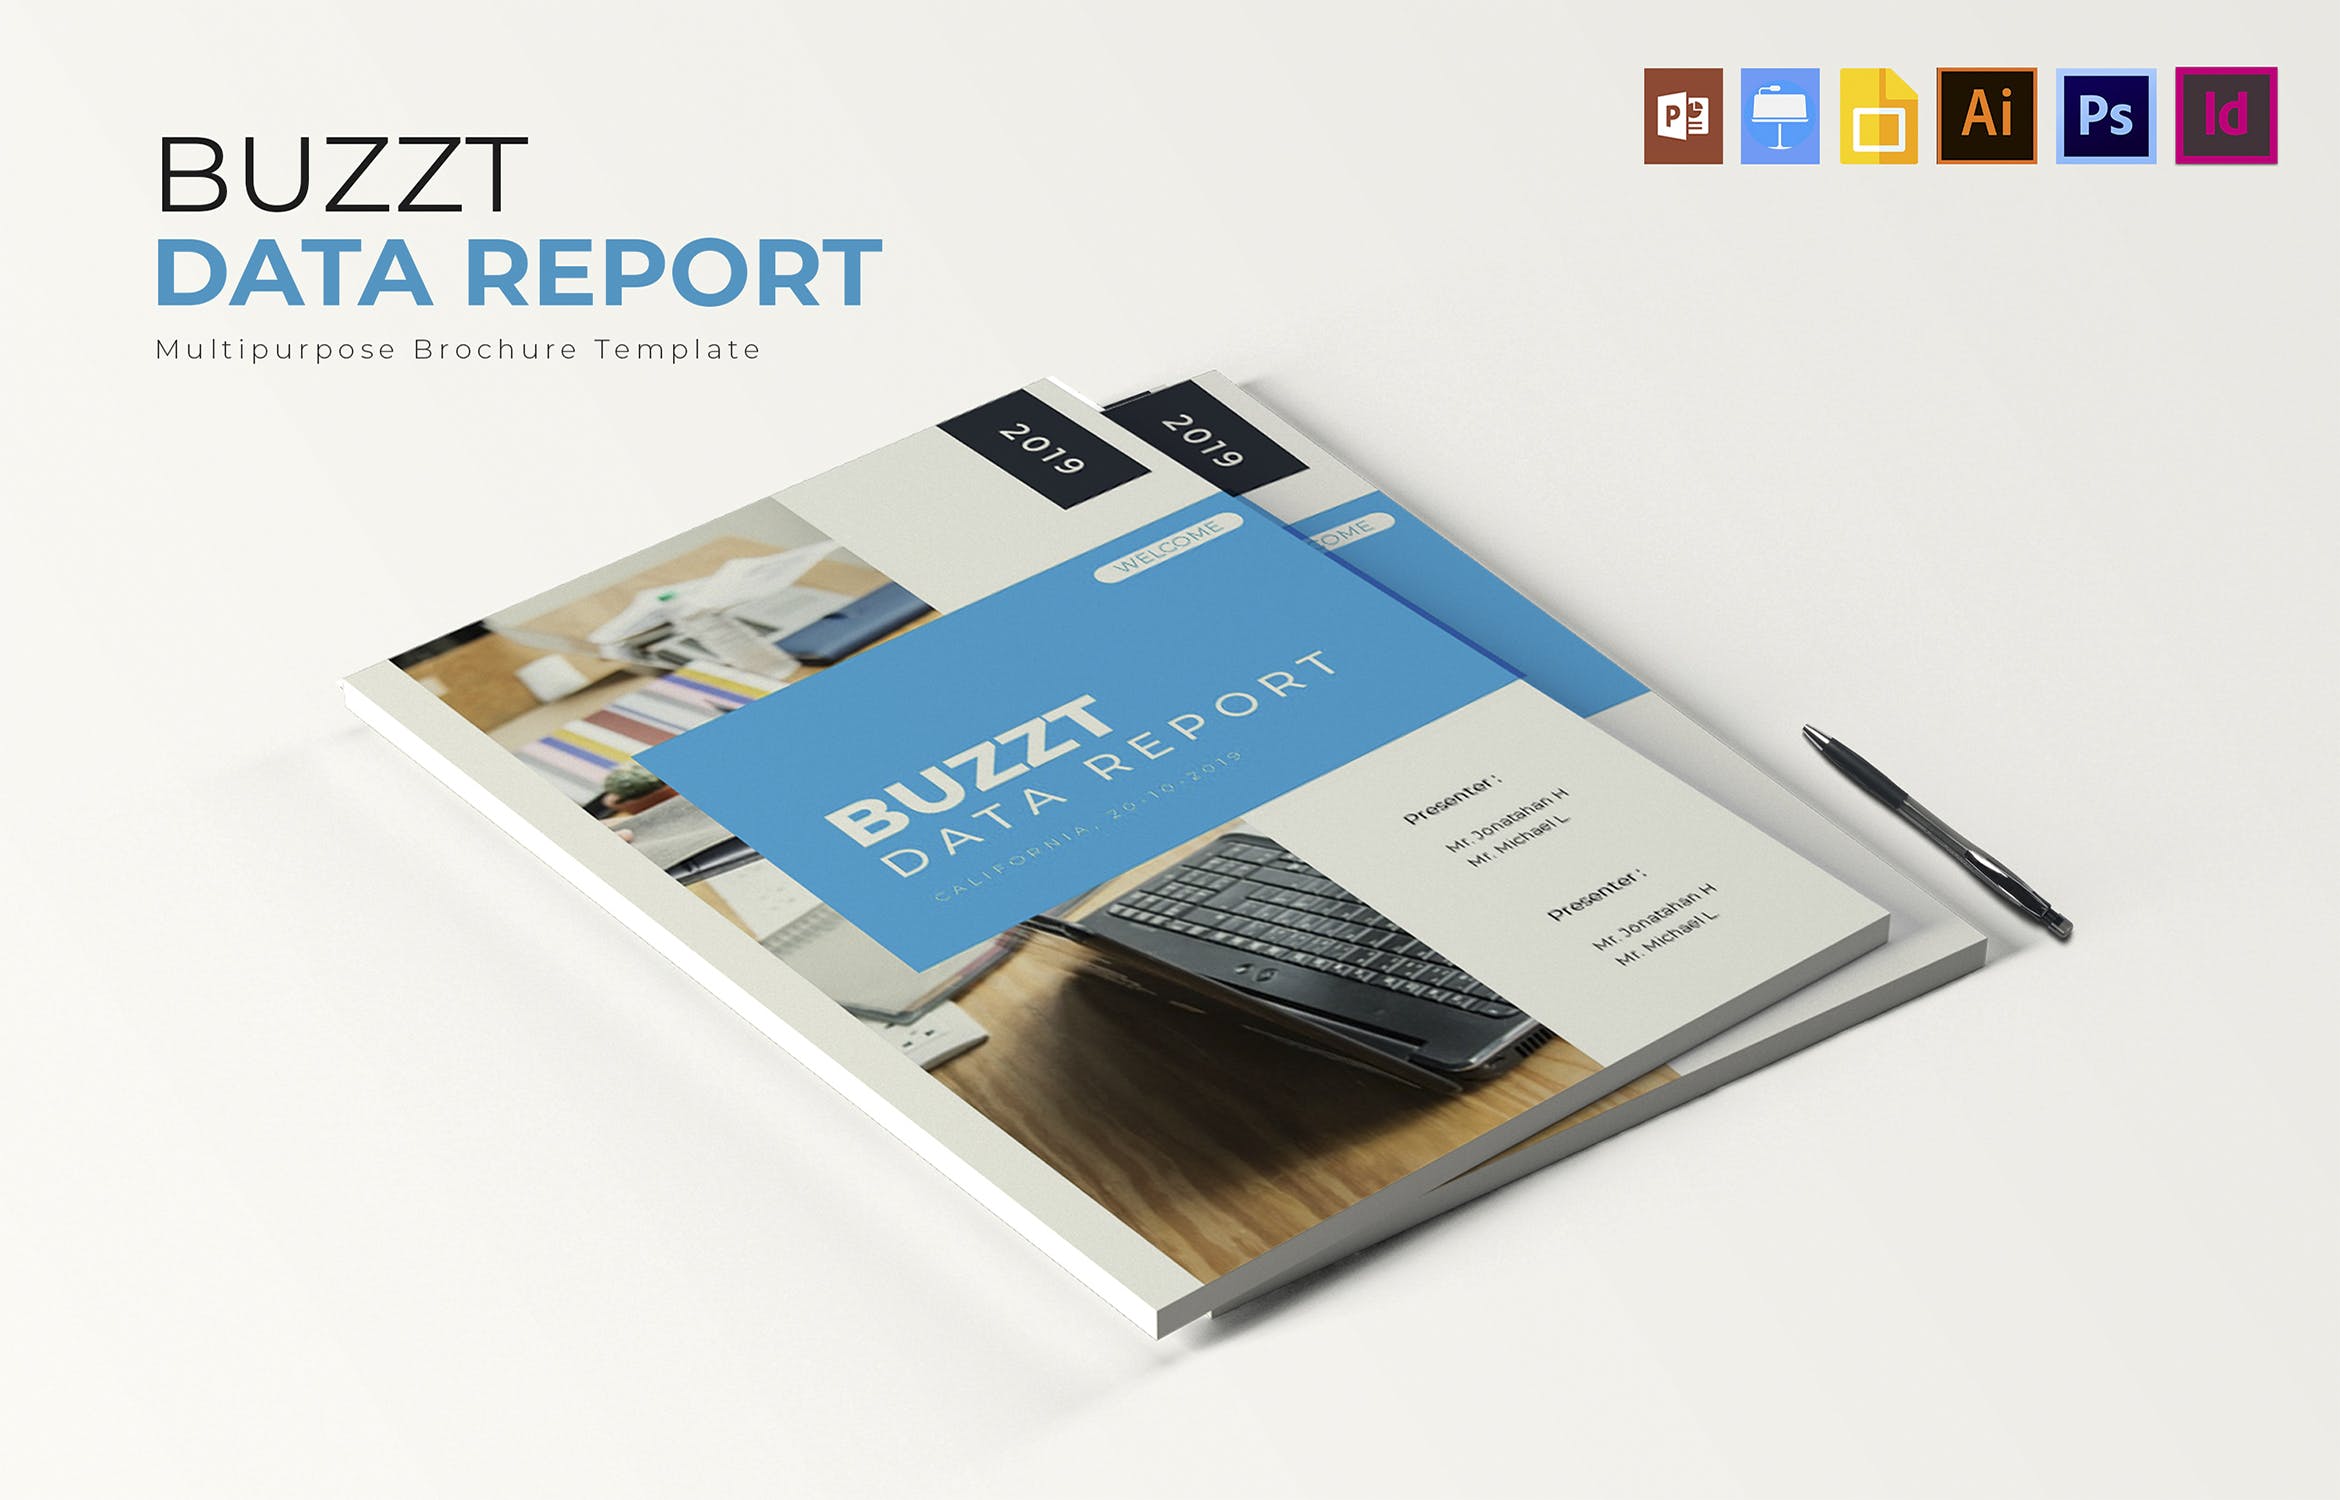 蓝色主题风格数据统计分析报告设计模板 Buzzt Data Report | Brochure Template插图3